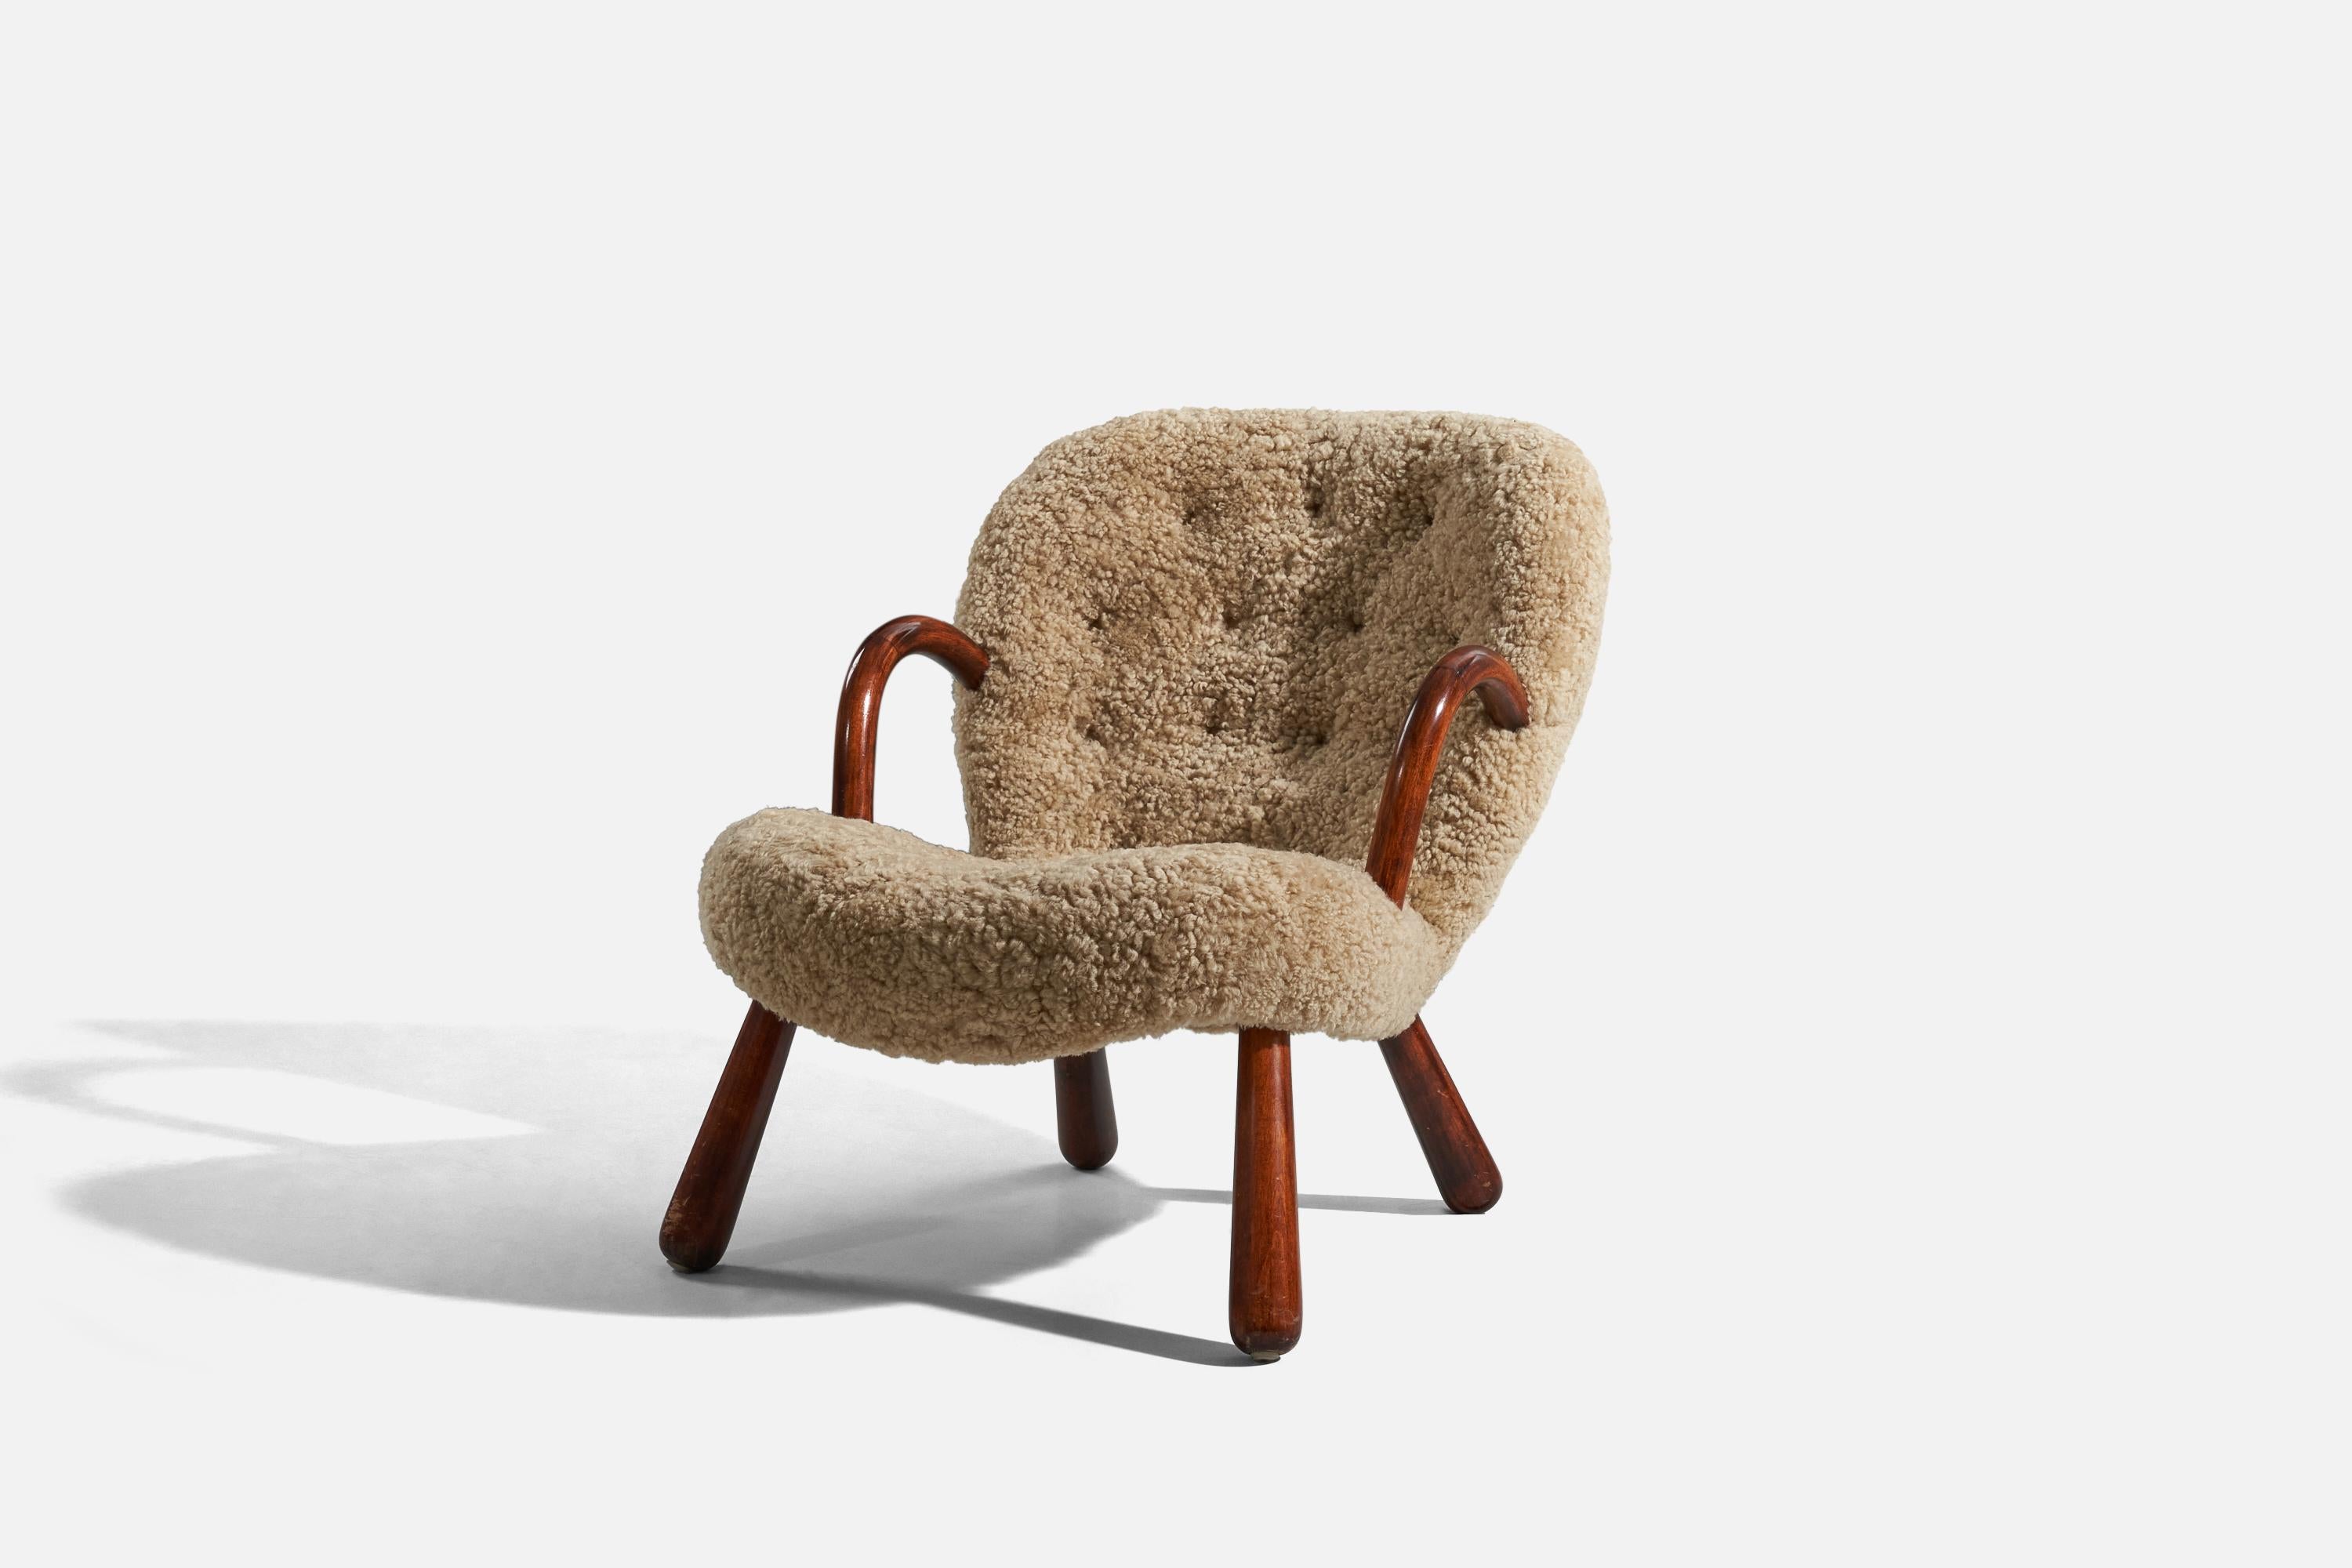 Chaise longue en peau de mouton et en bois, conçue par Arnold Madsen et produite au Danemark, dans les années 1950.